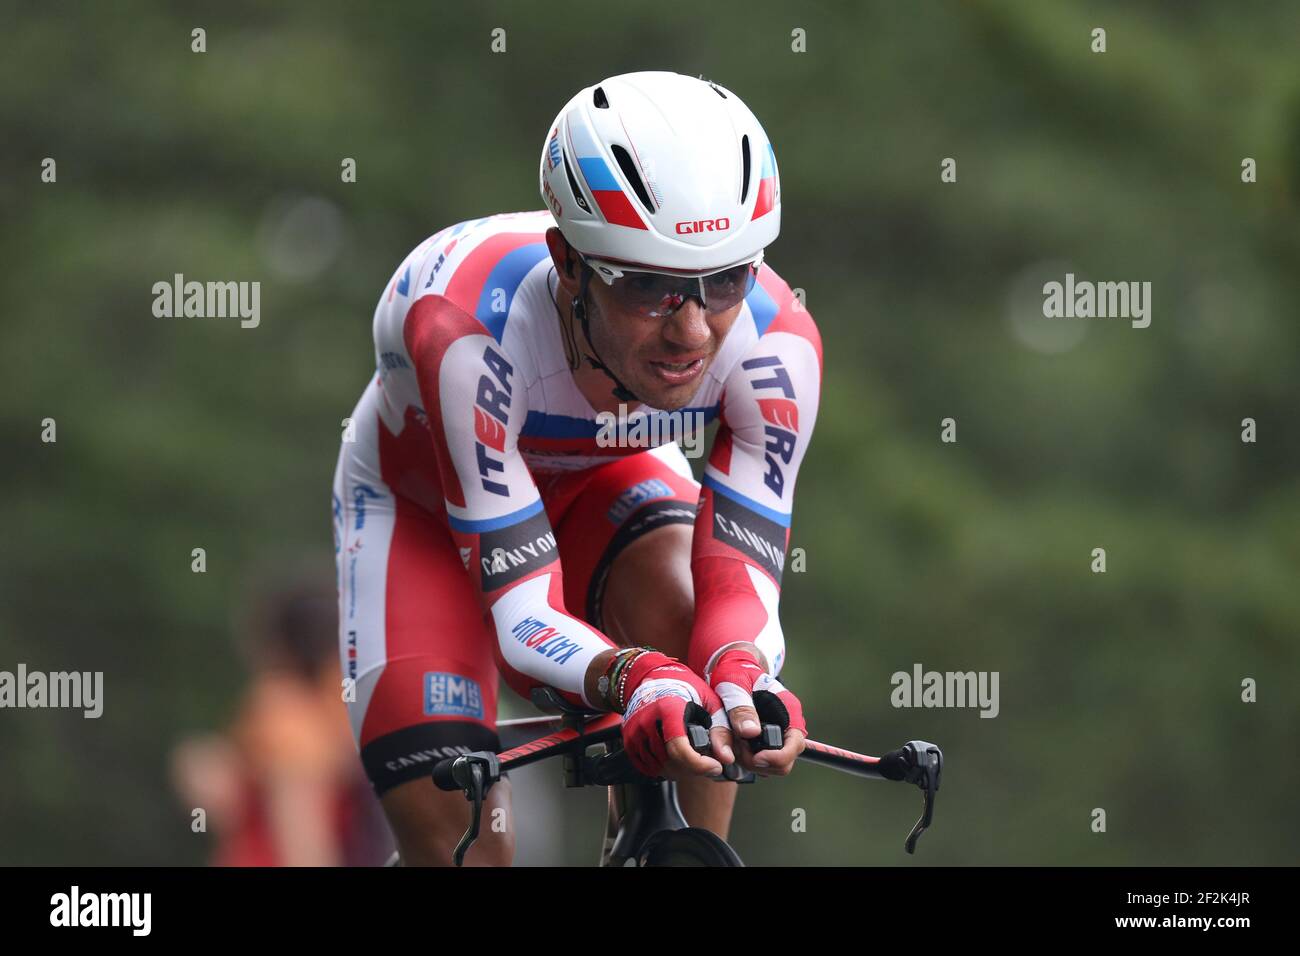 Cyclisme - UCI World Tour - Tour de France 2013 - étape 17 - essai à temps individuel - Embrun - Chorges (32 km) - 17/07/2013 - photo MANUEL BLONDEAU / DPPI - Joaquim Rodriguez d'Espagne et Team Katusha Banque D'Images